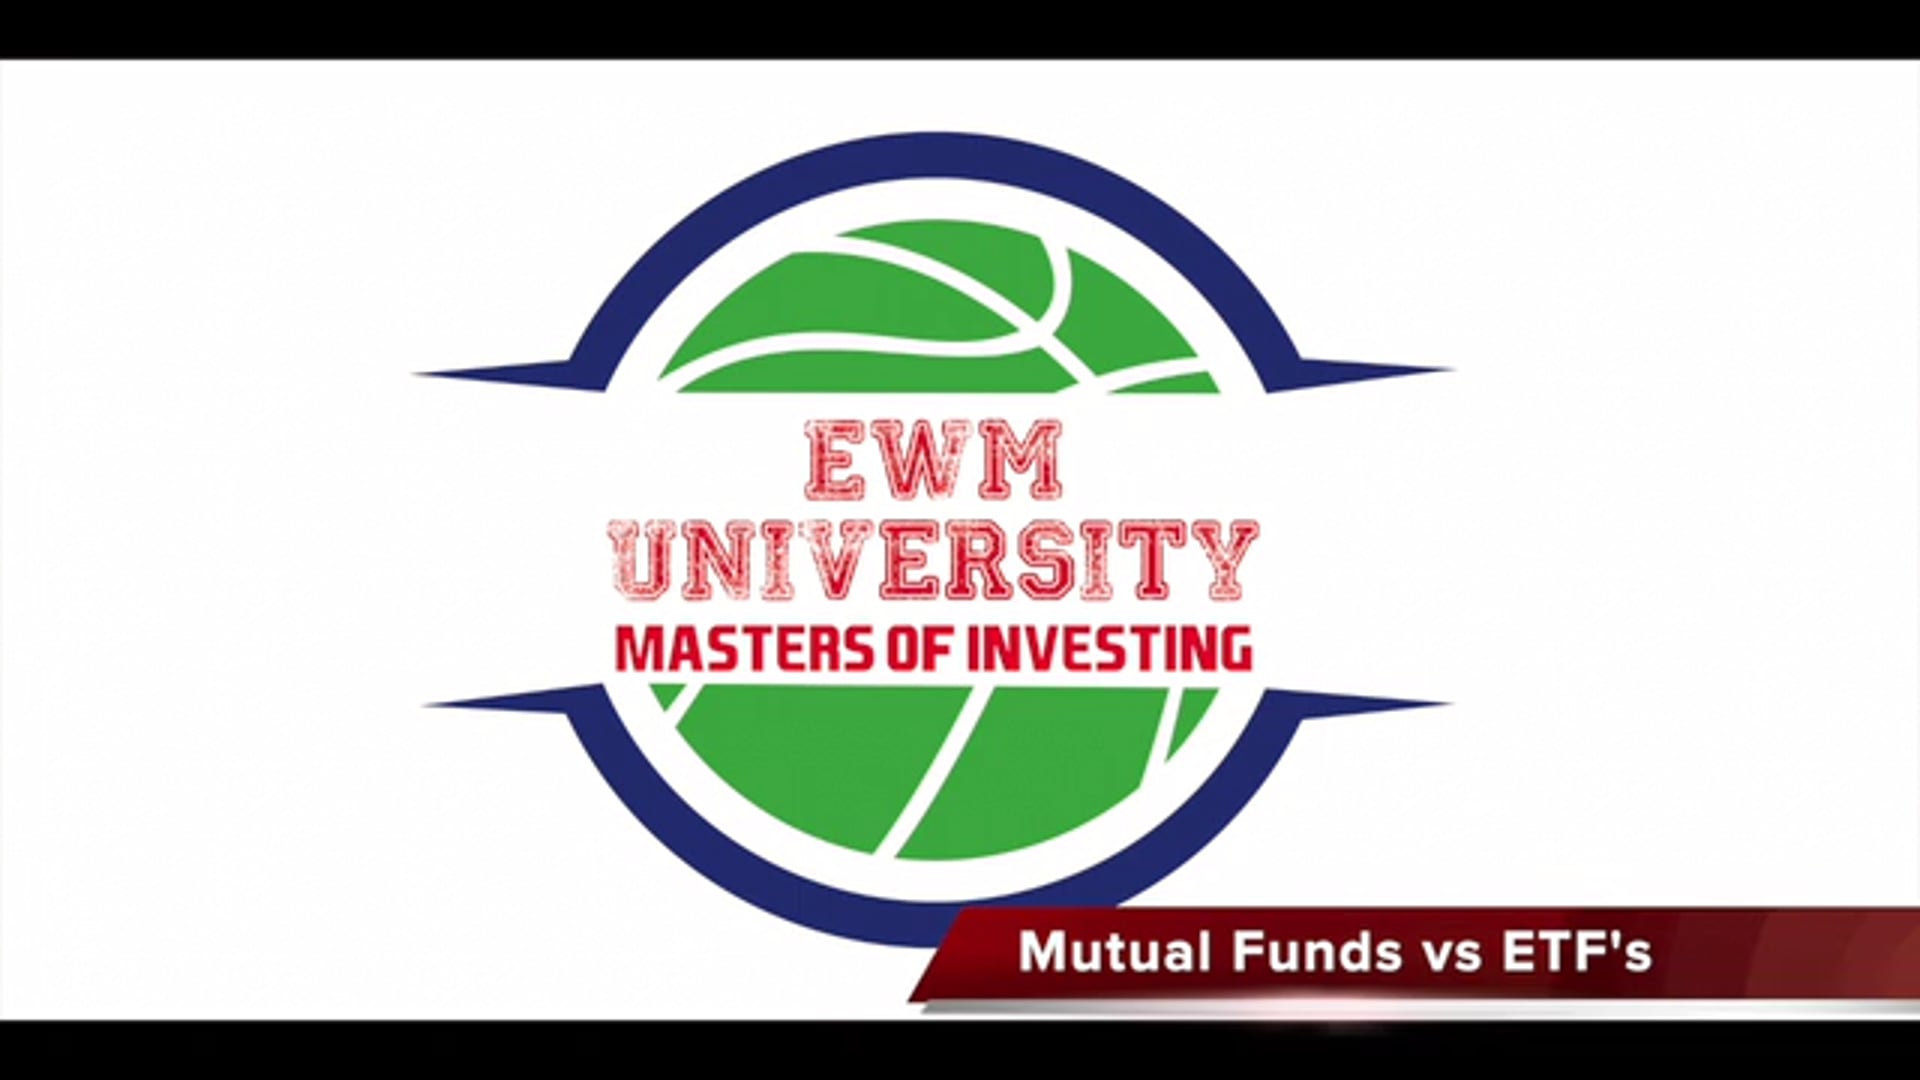 EWMU - Mutual Funds vs Etf's